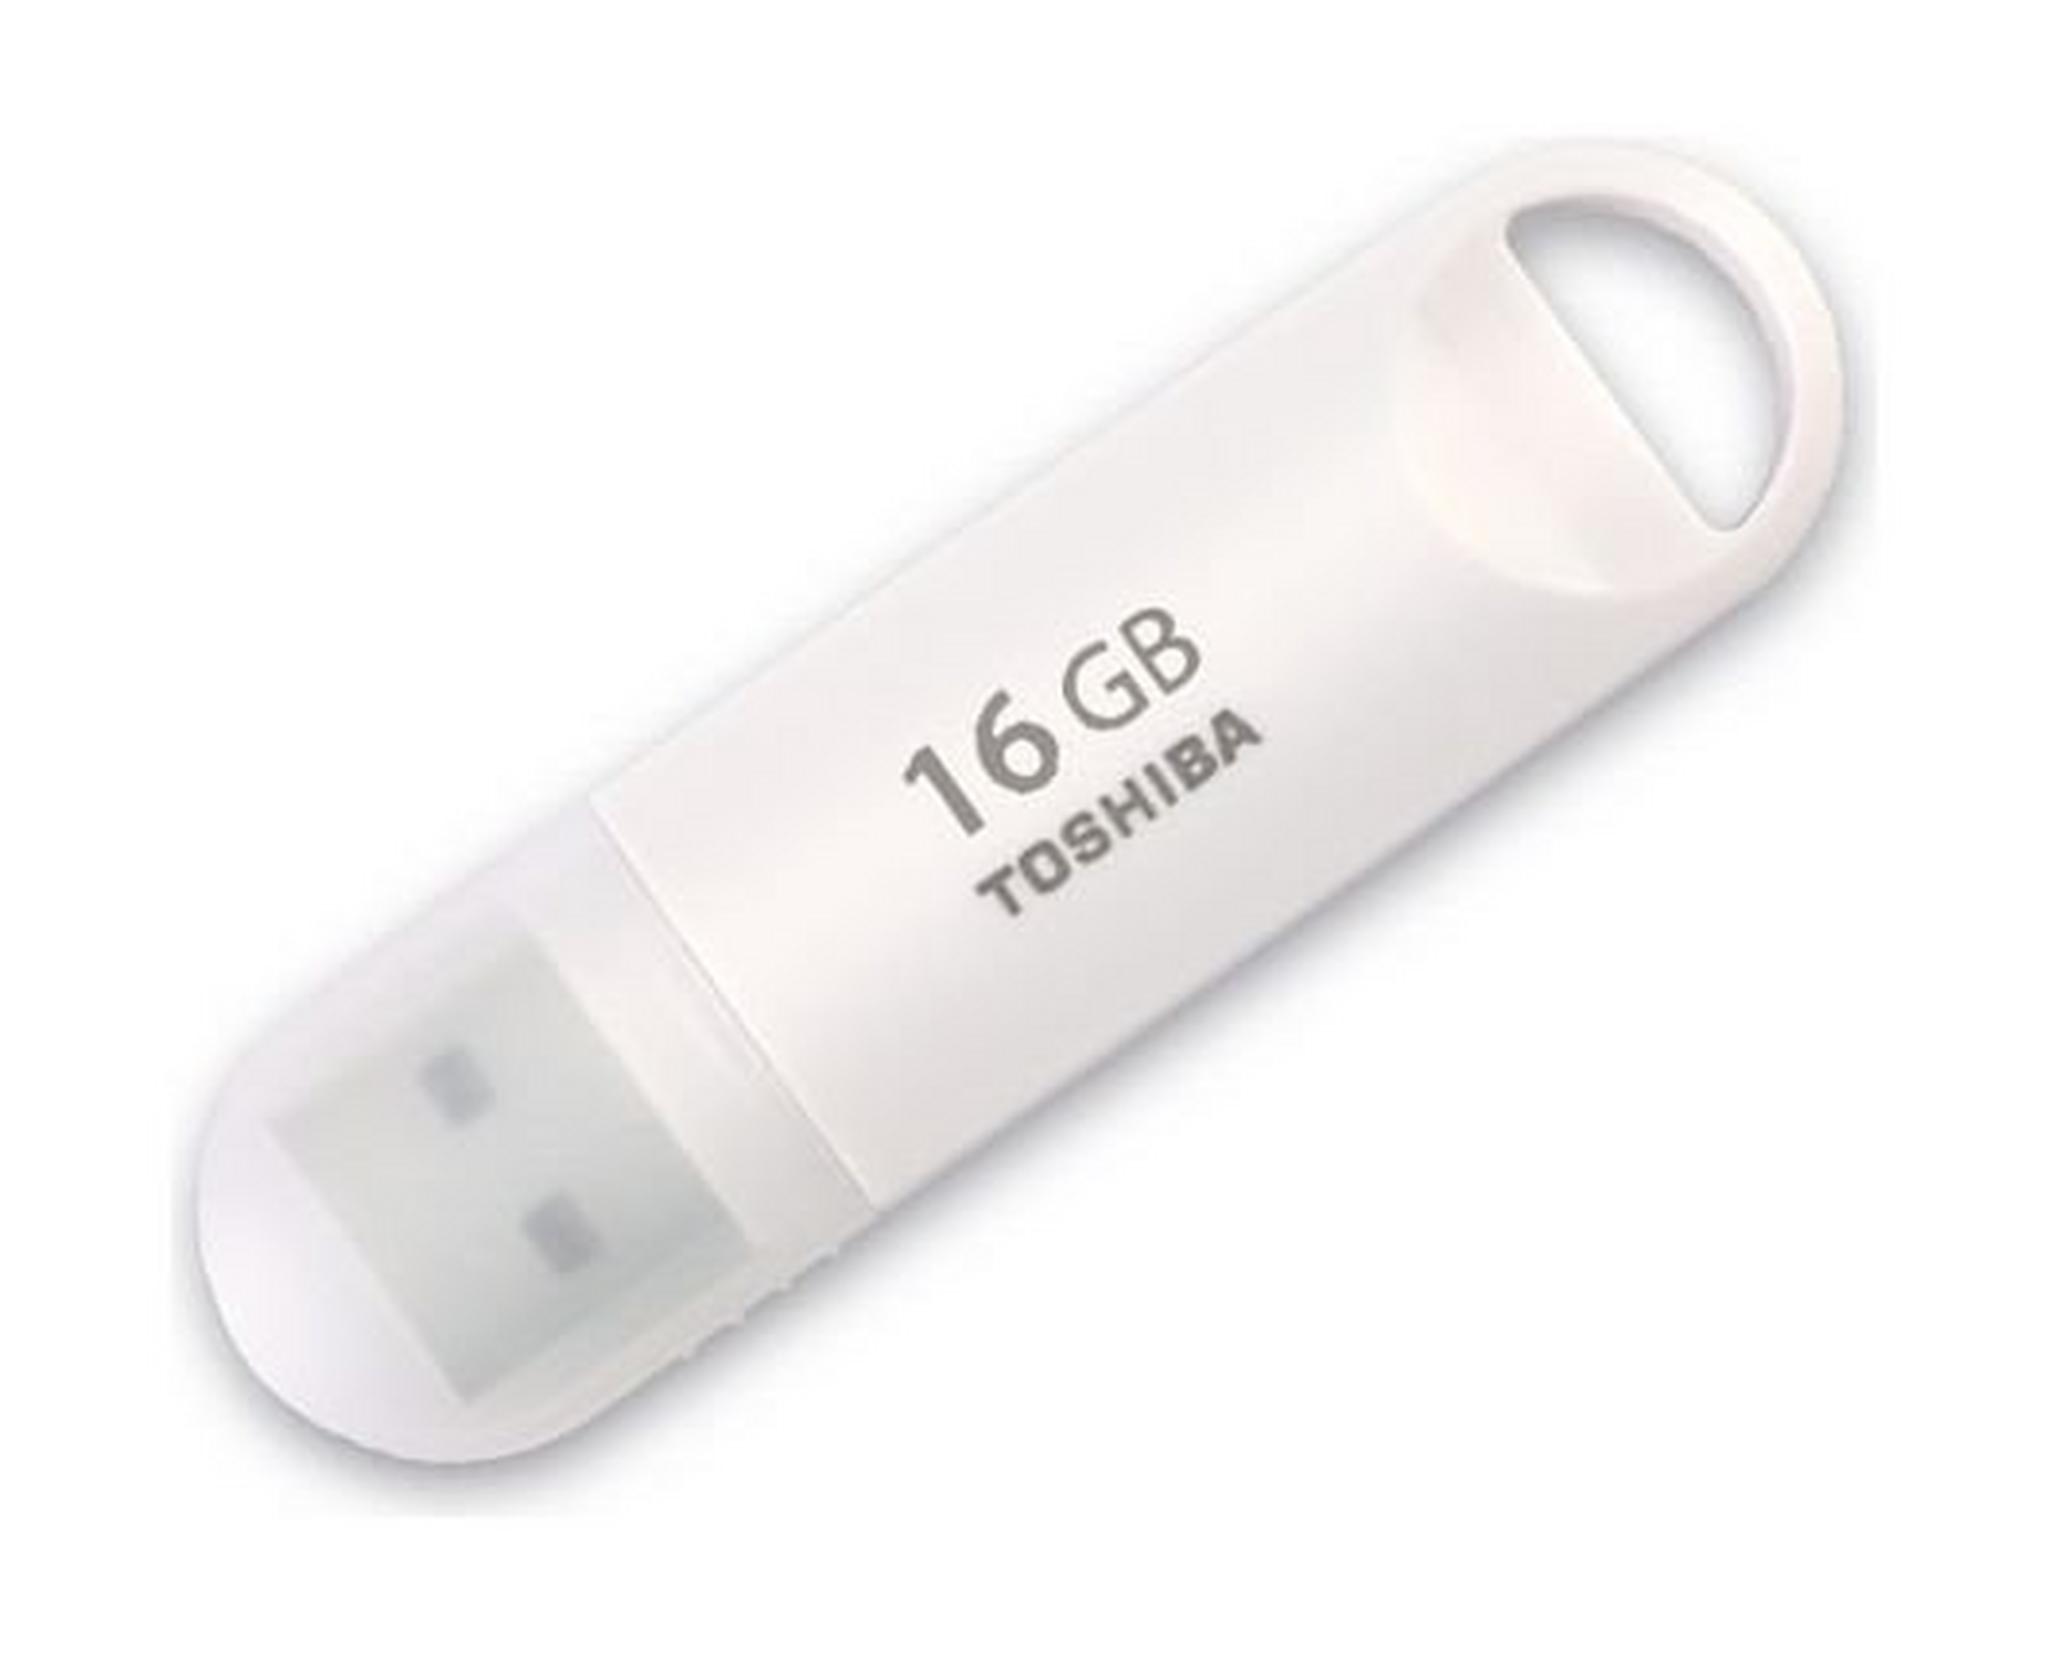 Toshiba FG Suzaku USB Flash Drive 16 GB-White (FG 16G SUZAKU)